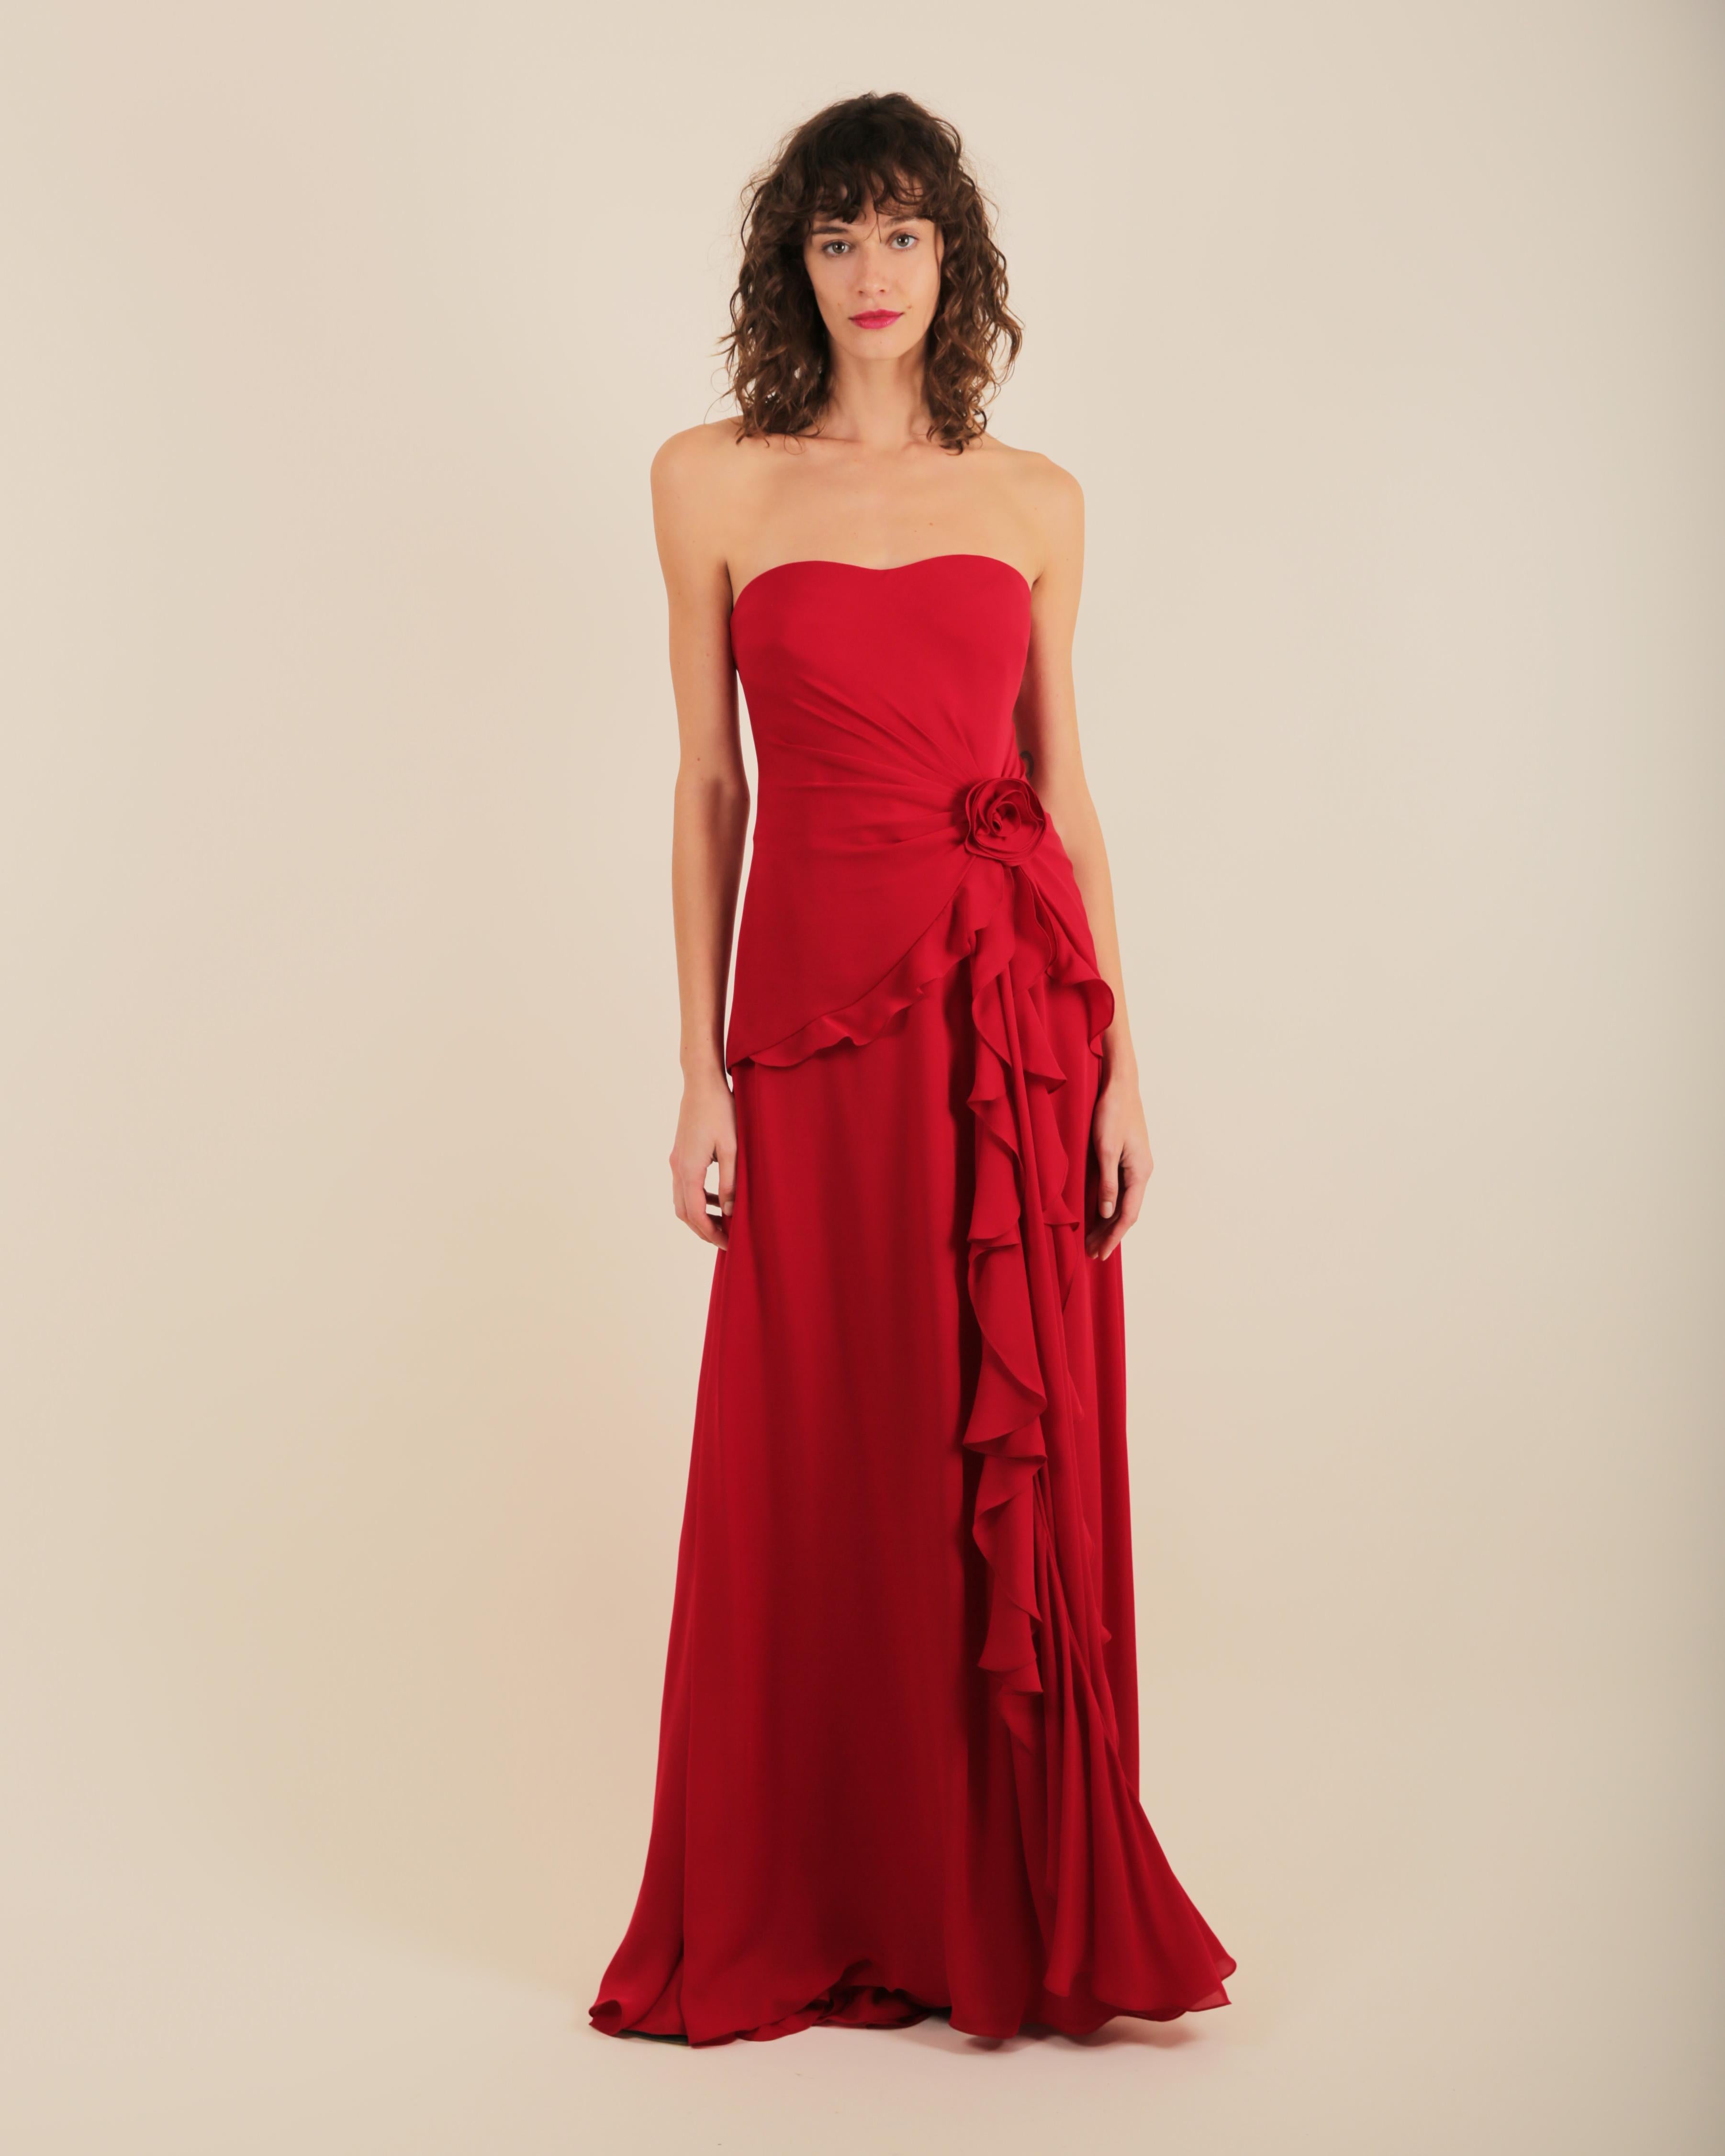 Ralph Lauren SS 2013 strapless bustier red sweetheart neck train silk gown dress 11